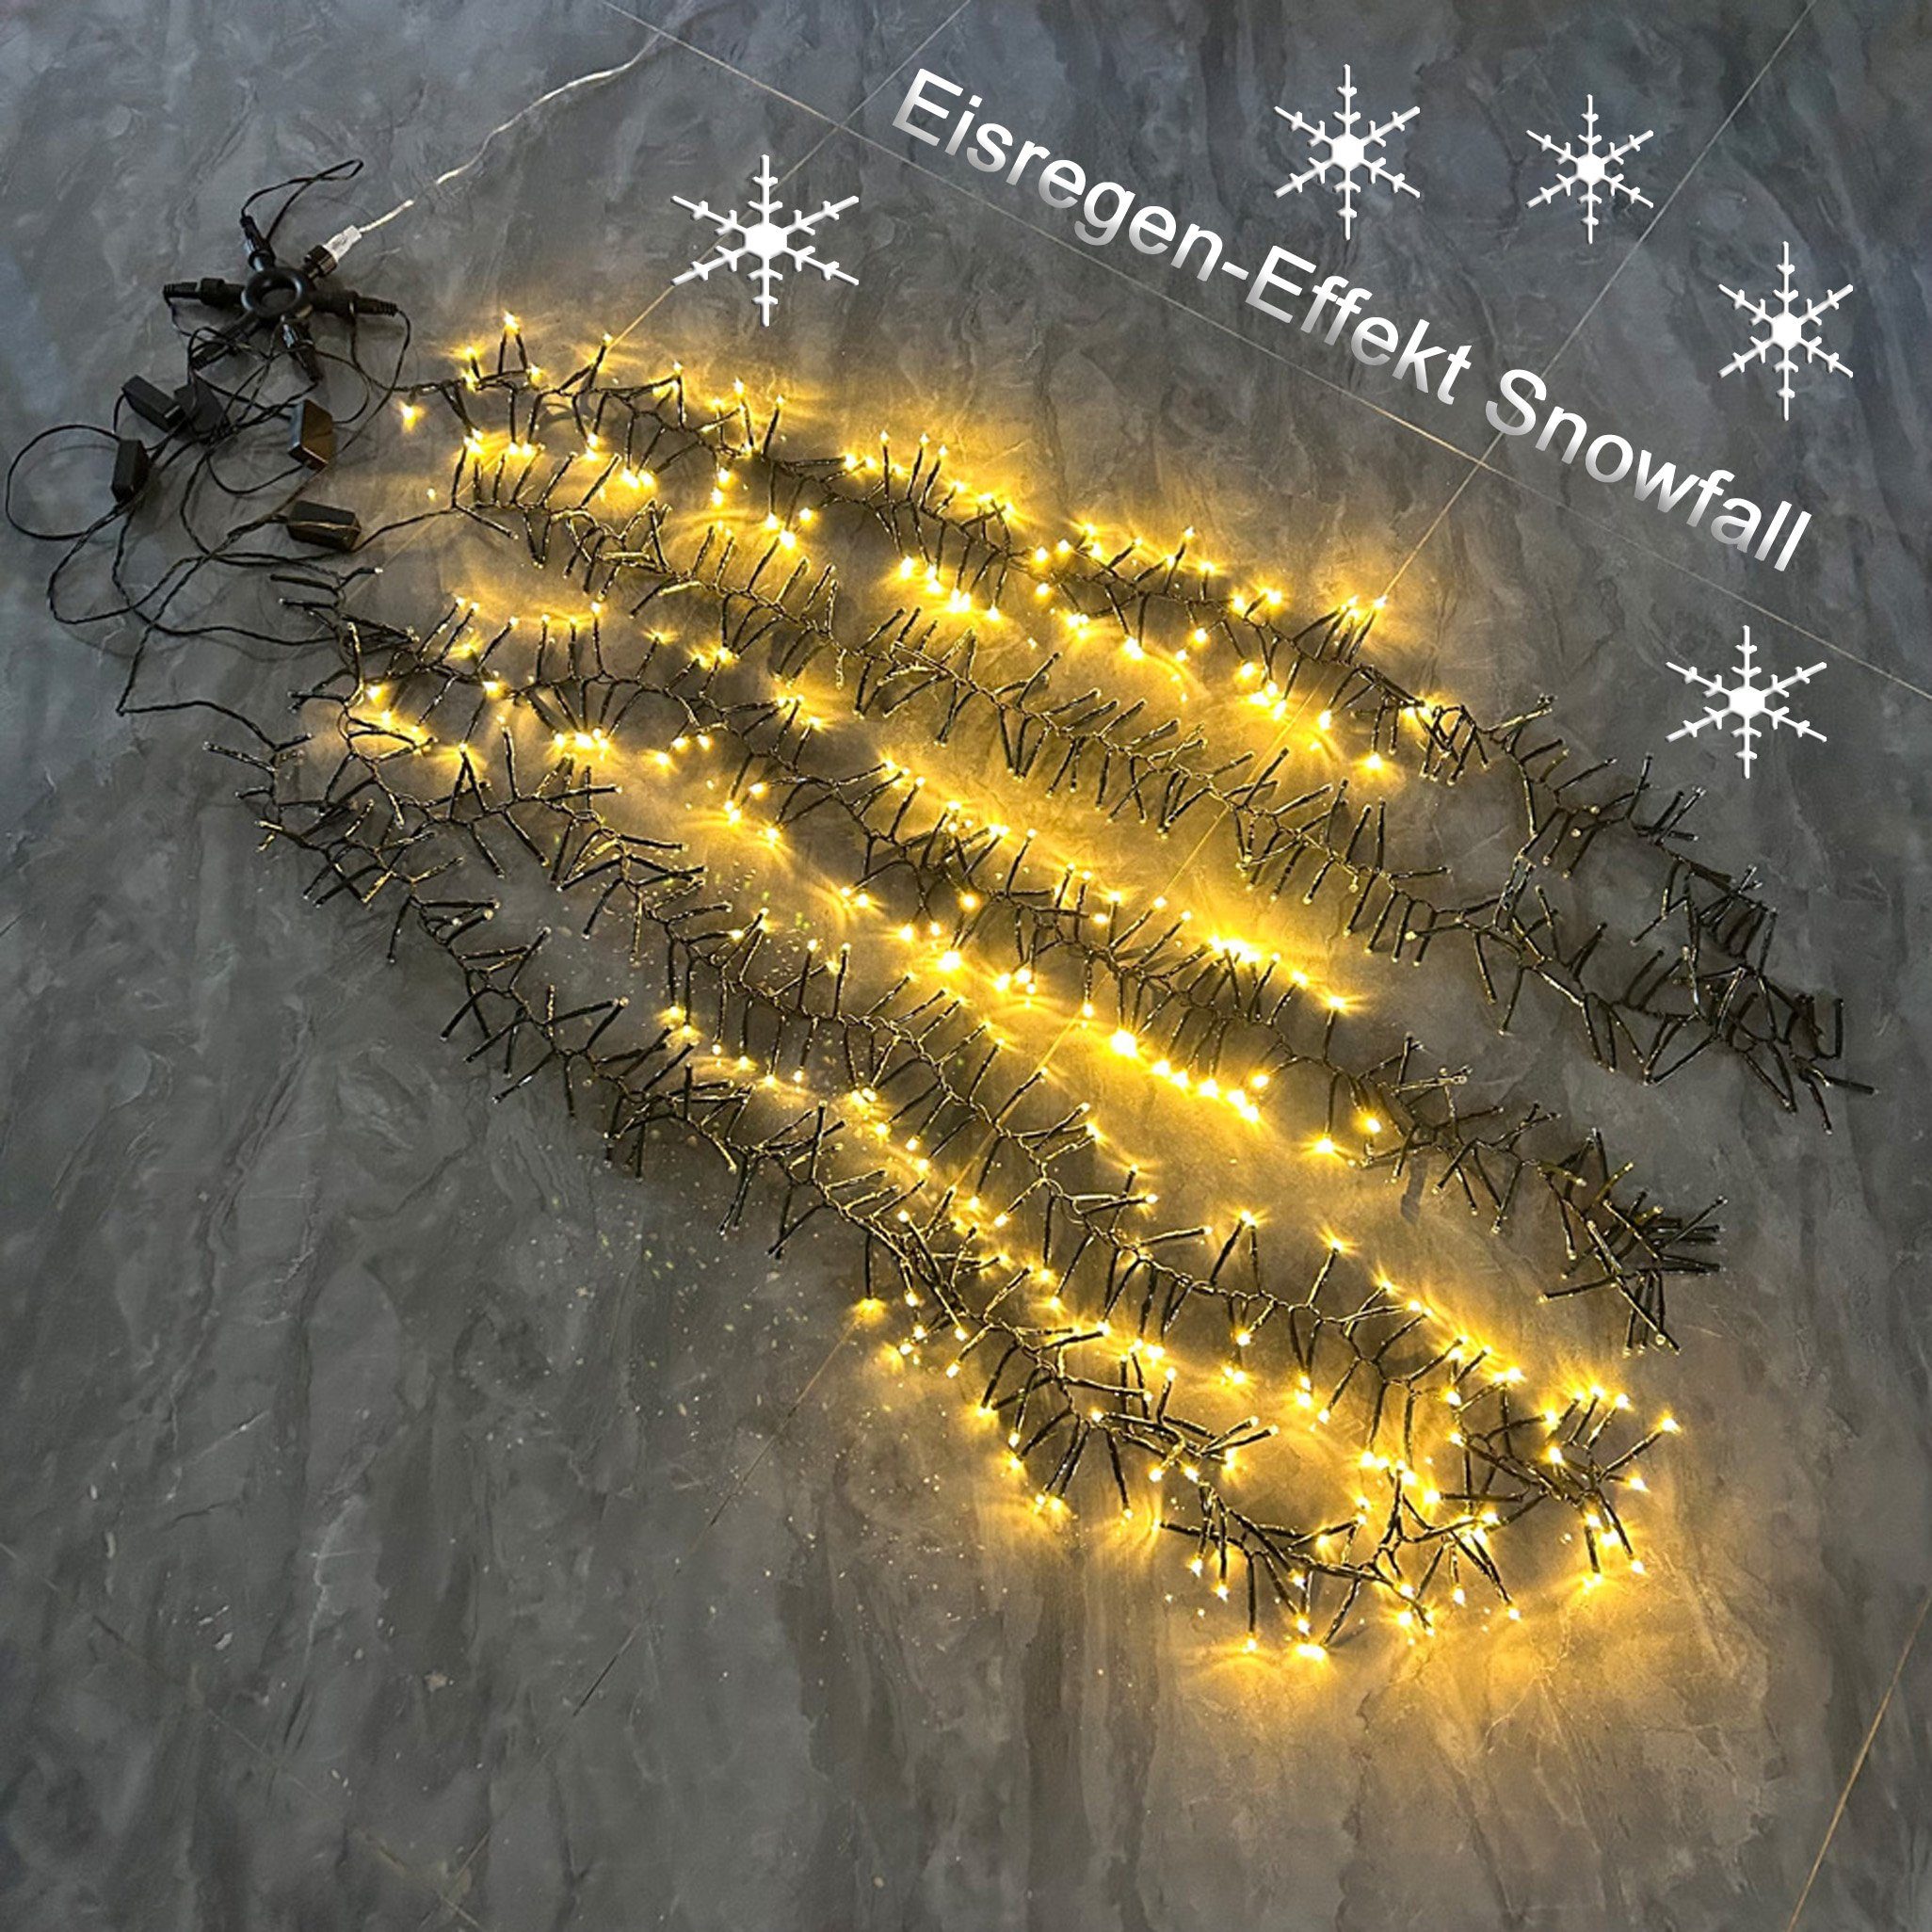 hängend Timer, Arnusa LED-Lichterkette Wasserfall Snowfall Cascade Moderne Lichterkette Cluster Beleuchtung Optik Baum Eisregen